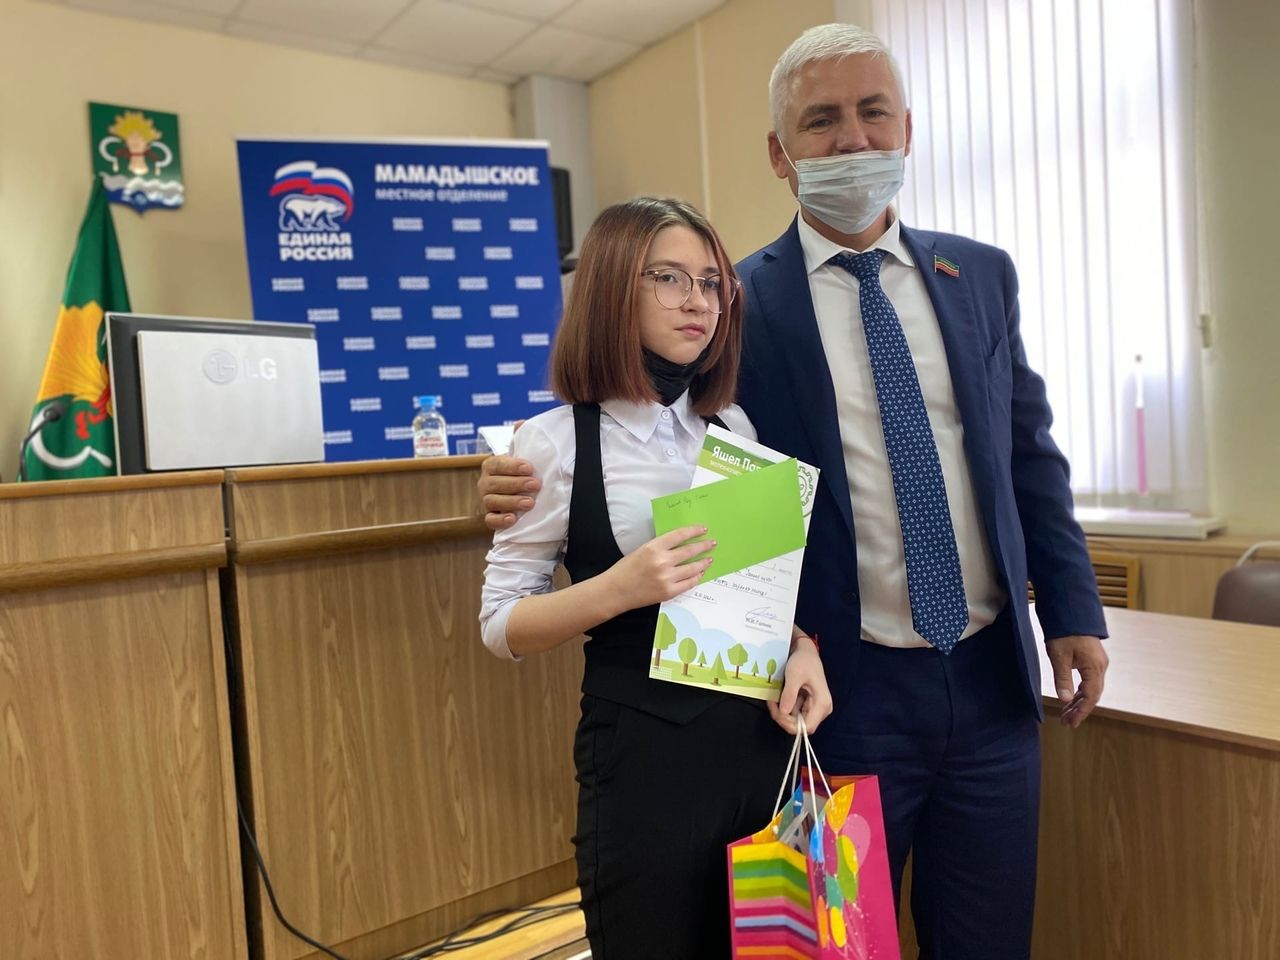 Марат Галиев: молодое поколение должно внимательно относиться к природным богатствам Татарстана